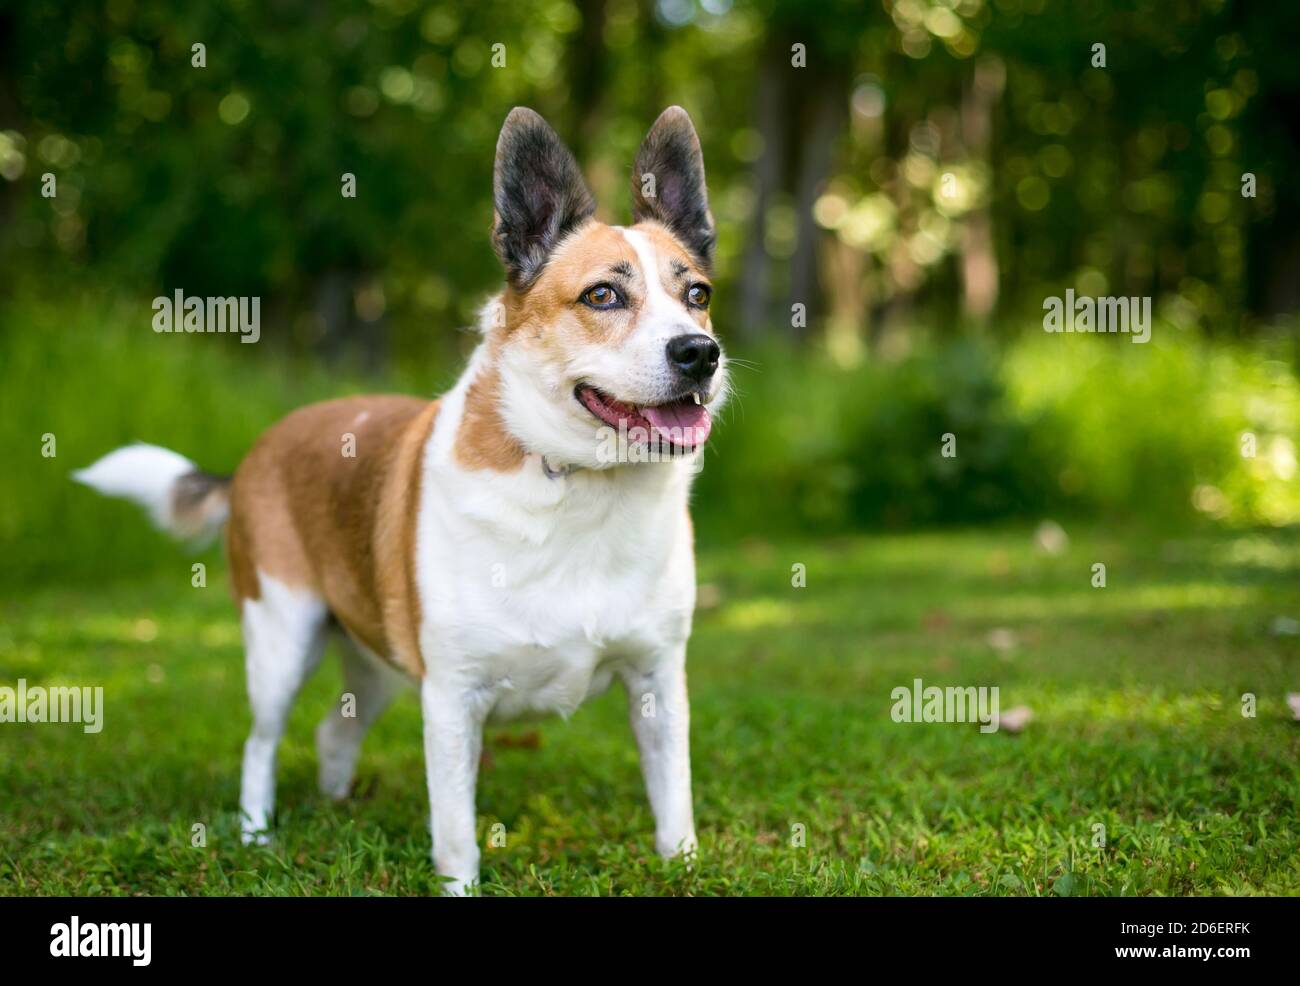 Un chien mixte de race Welsh Corgi x Terrier debout à l'extérieur avec une expression d'alerte Banque D'Images